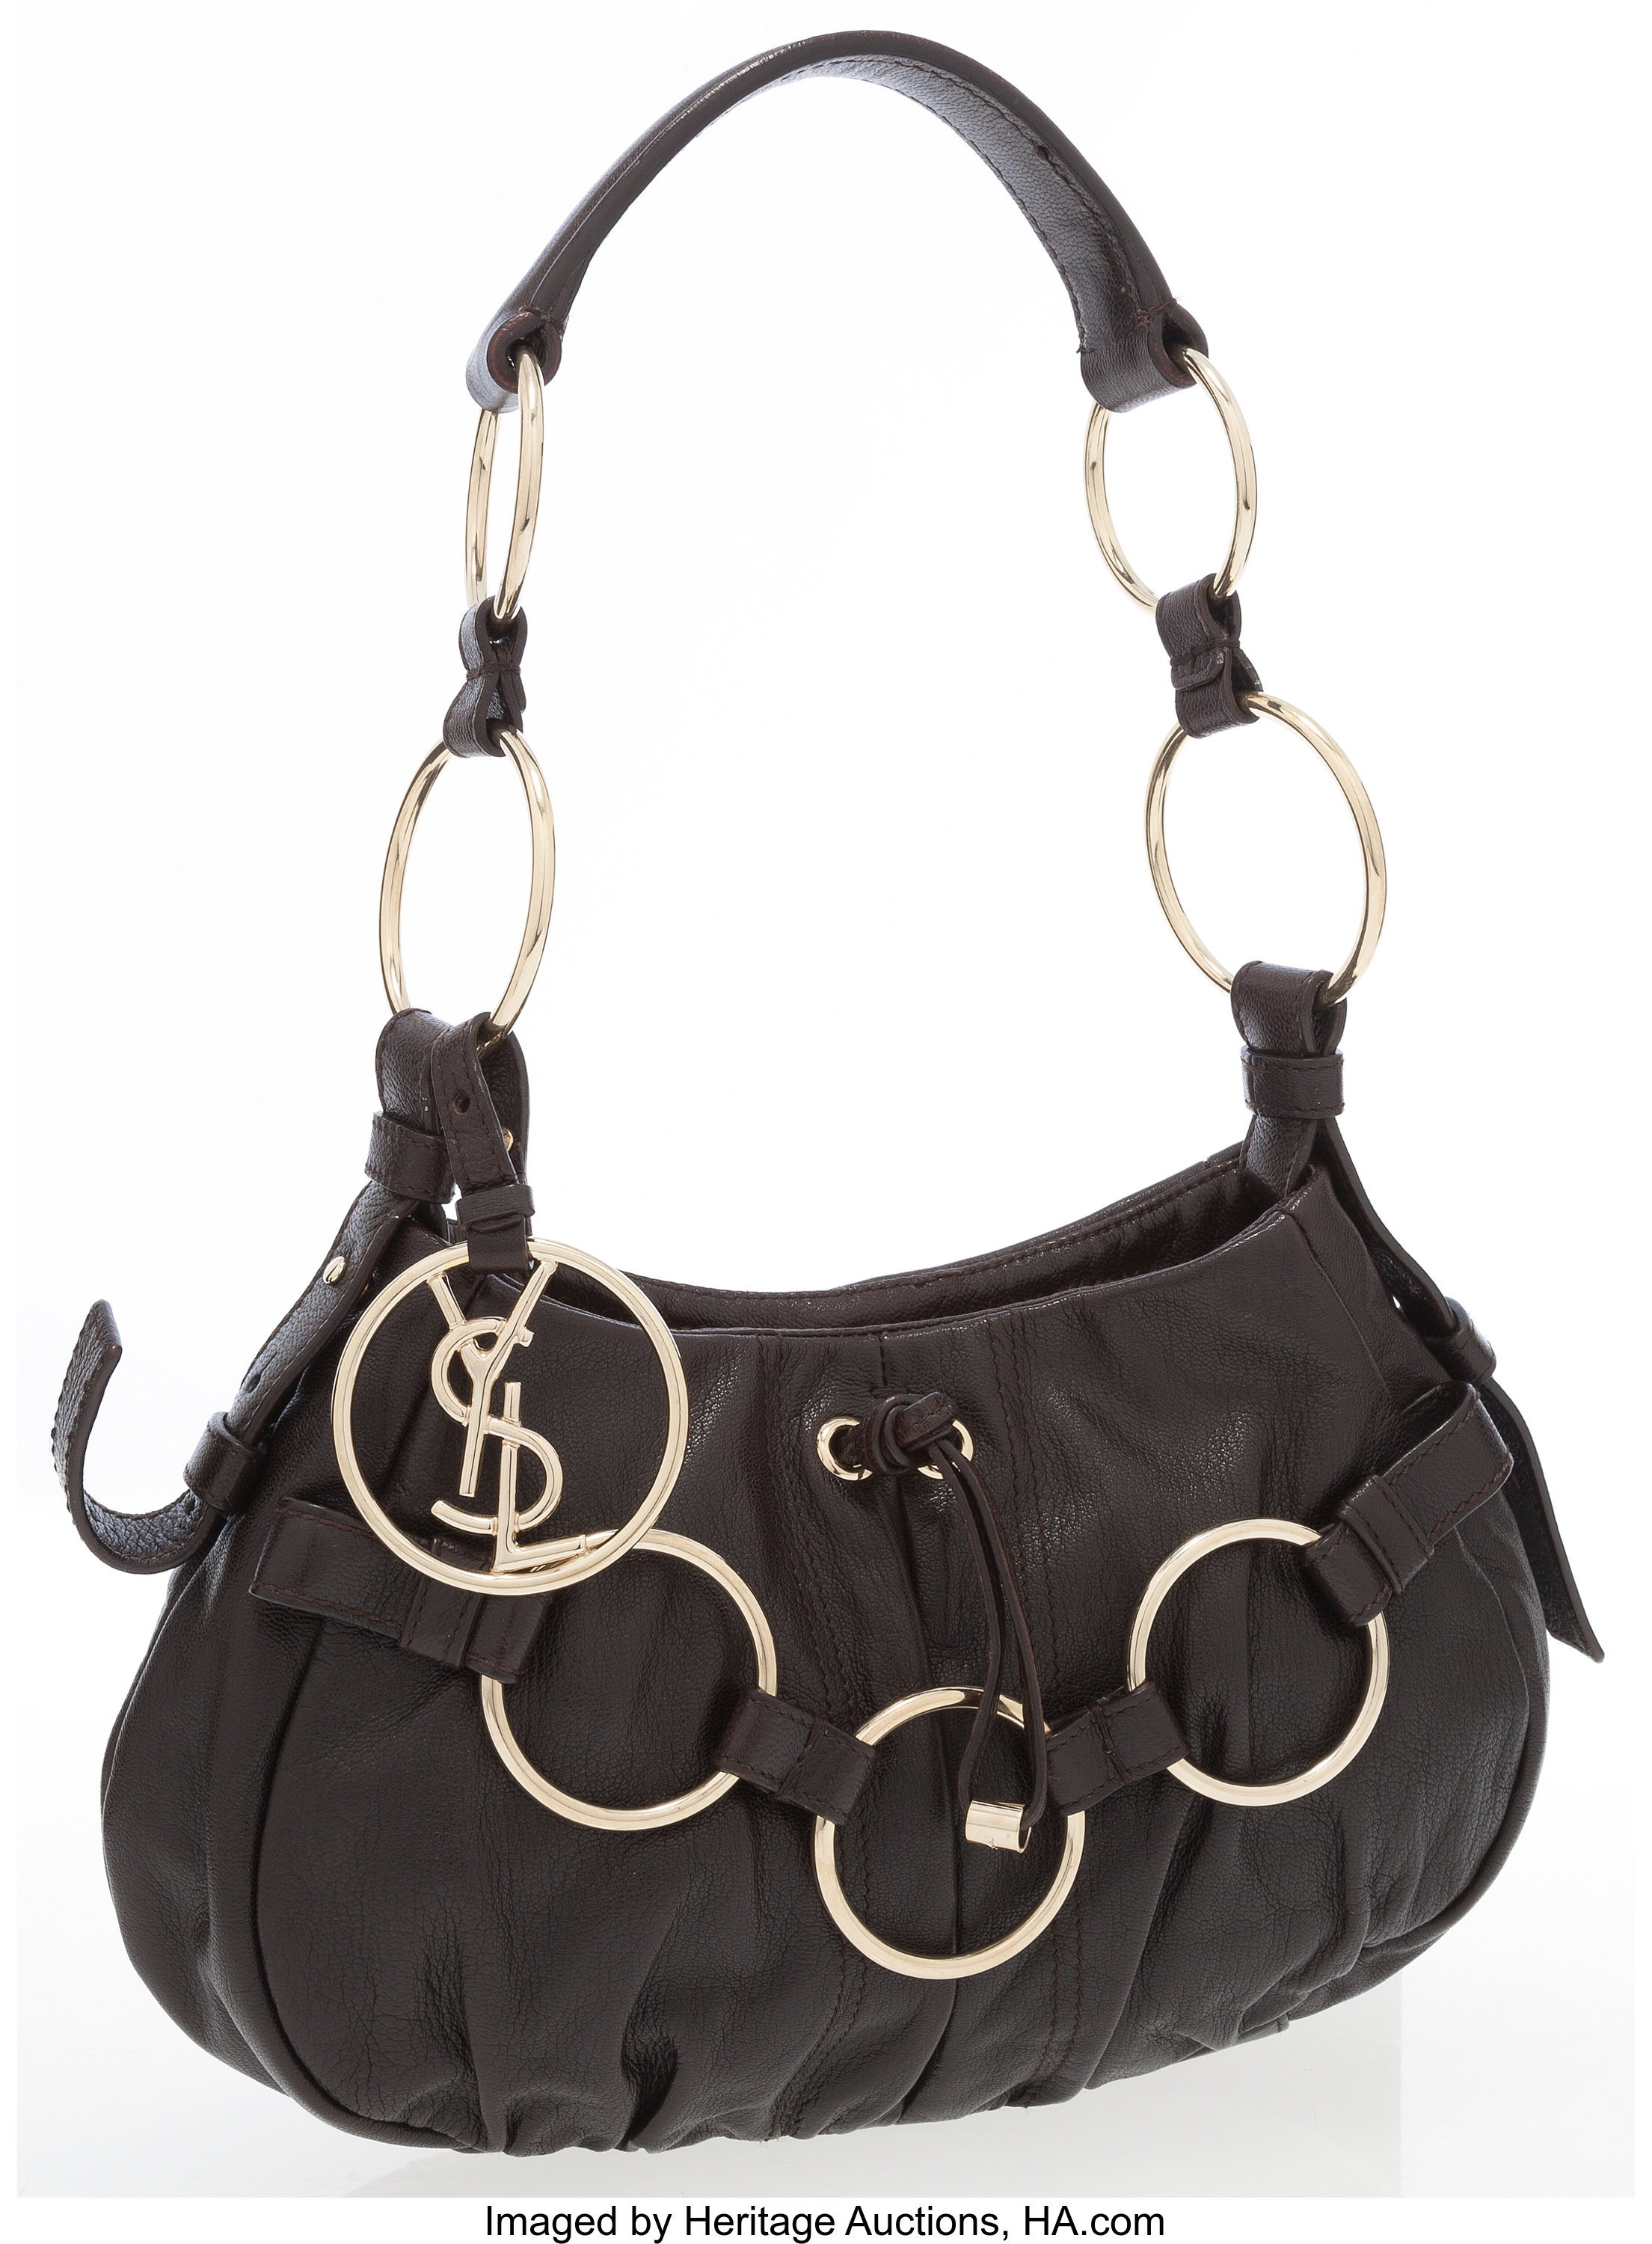 Yves Saint Laurent Leather Saharienne Bag - Neutrals Shoulder Bags